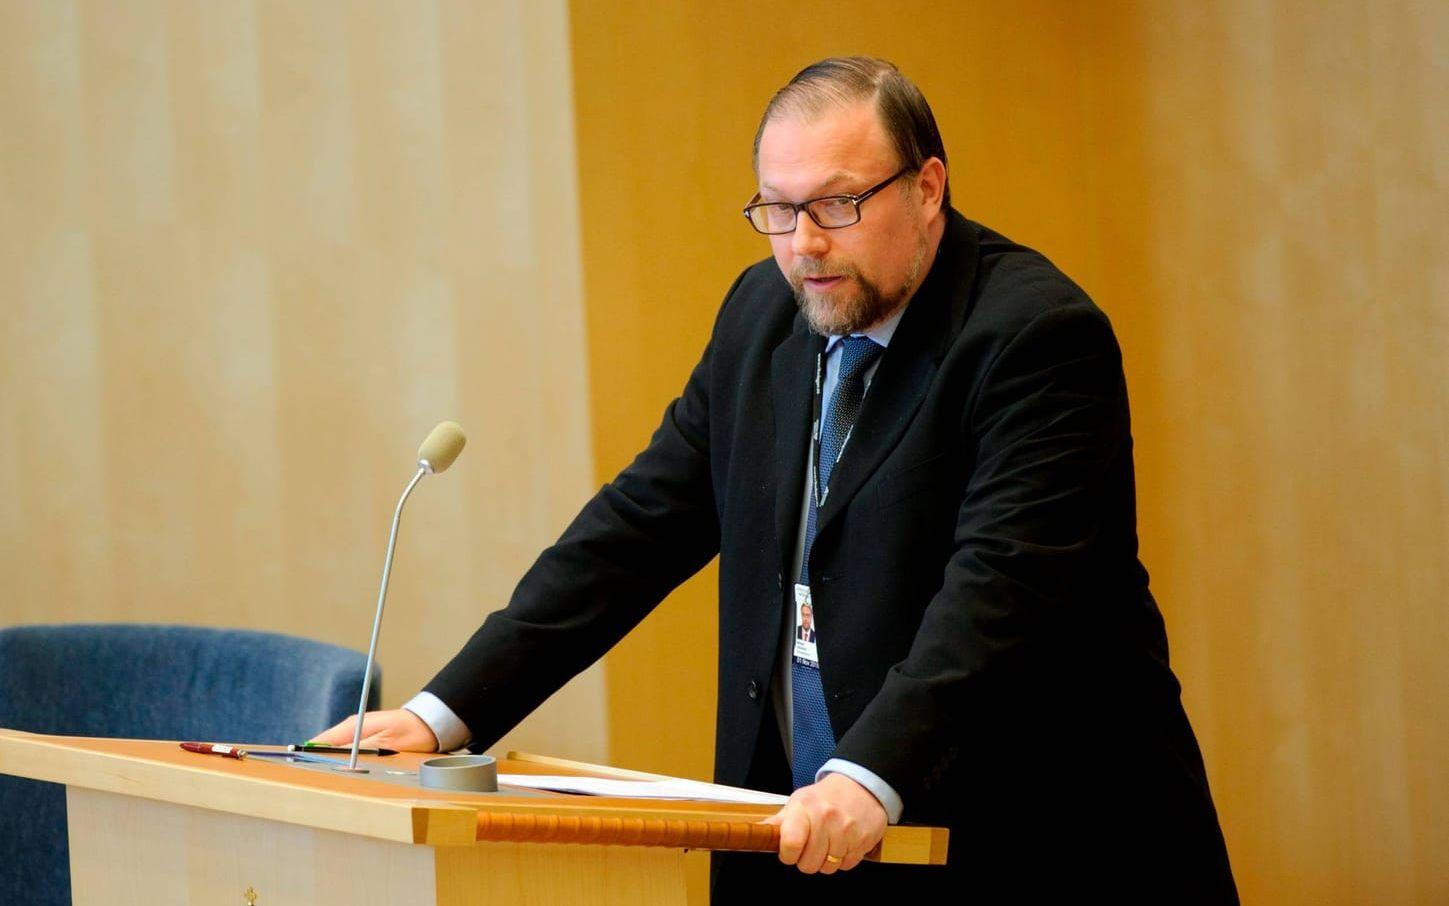 En av de som utpekas är Mikael Jansson (SD), före detta partiledare för Sverigedemokraterna. Bild: Scanpix